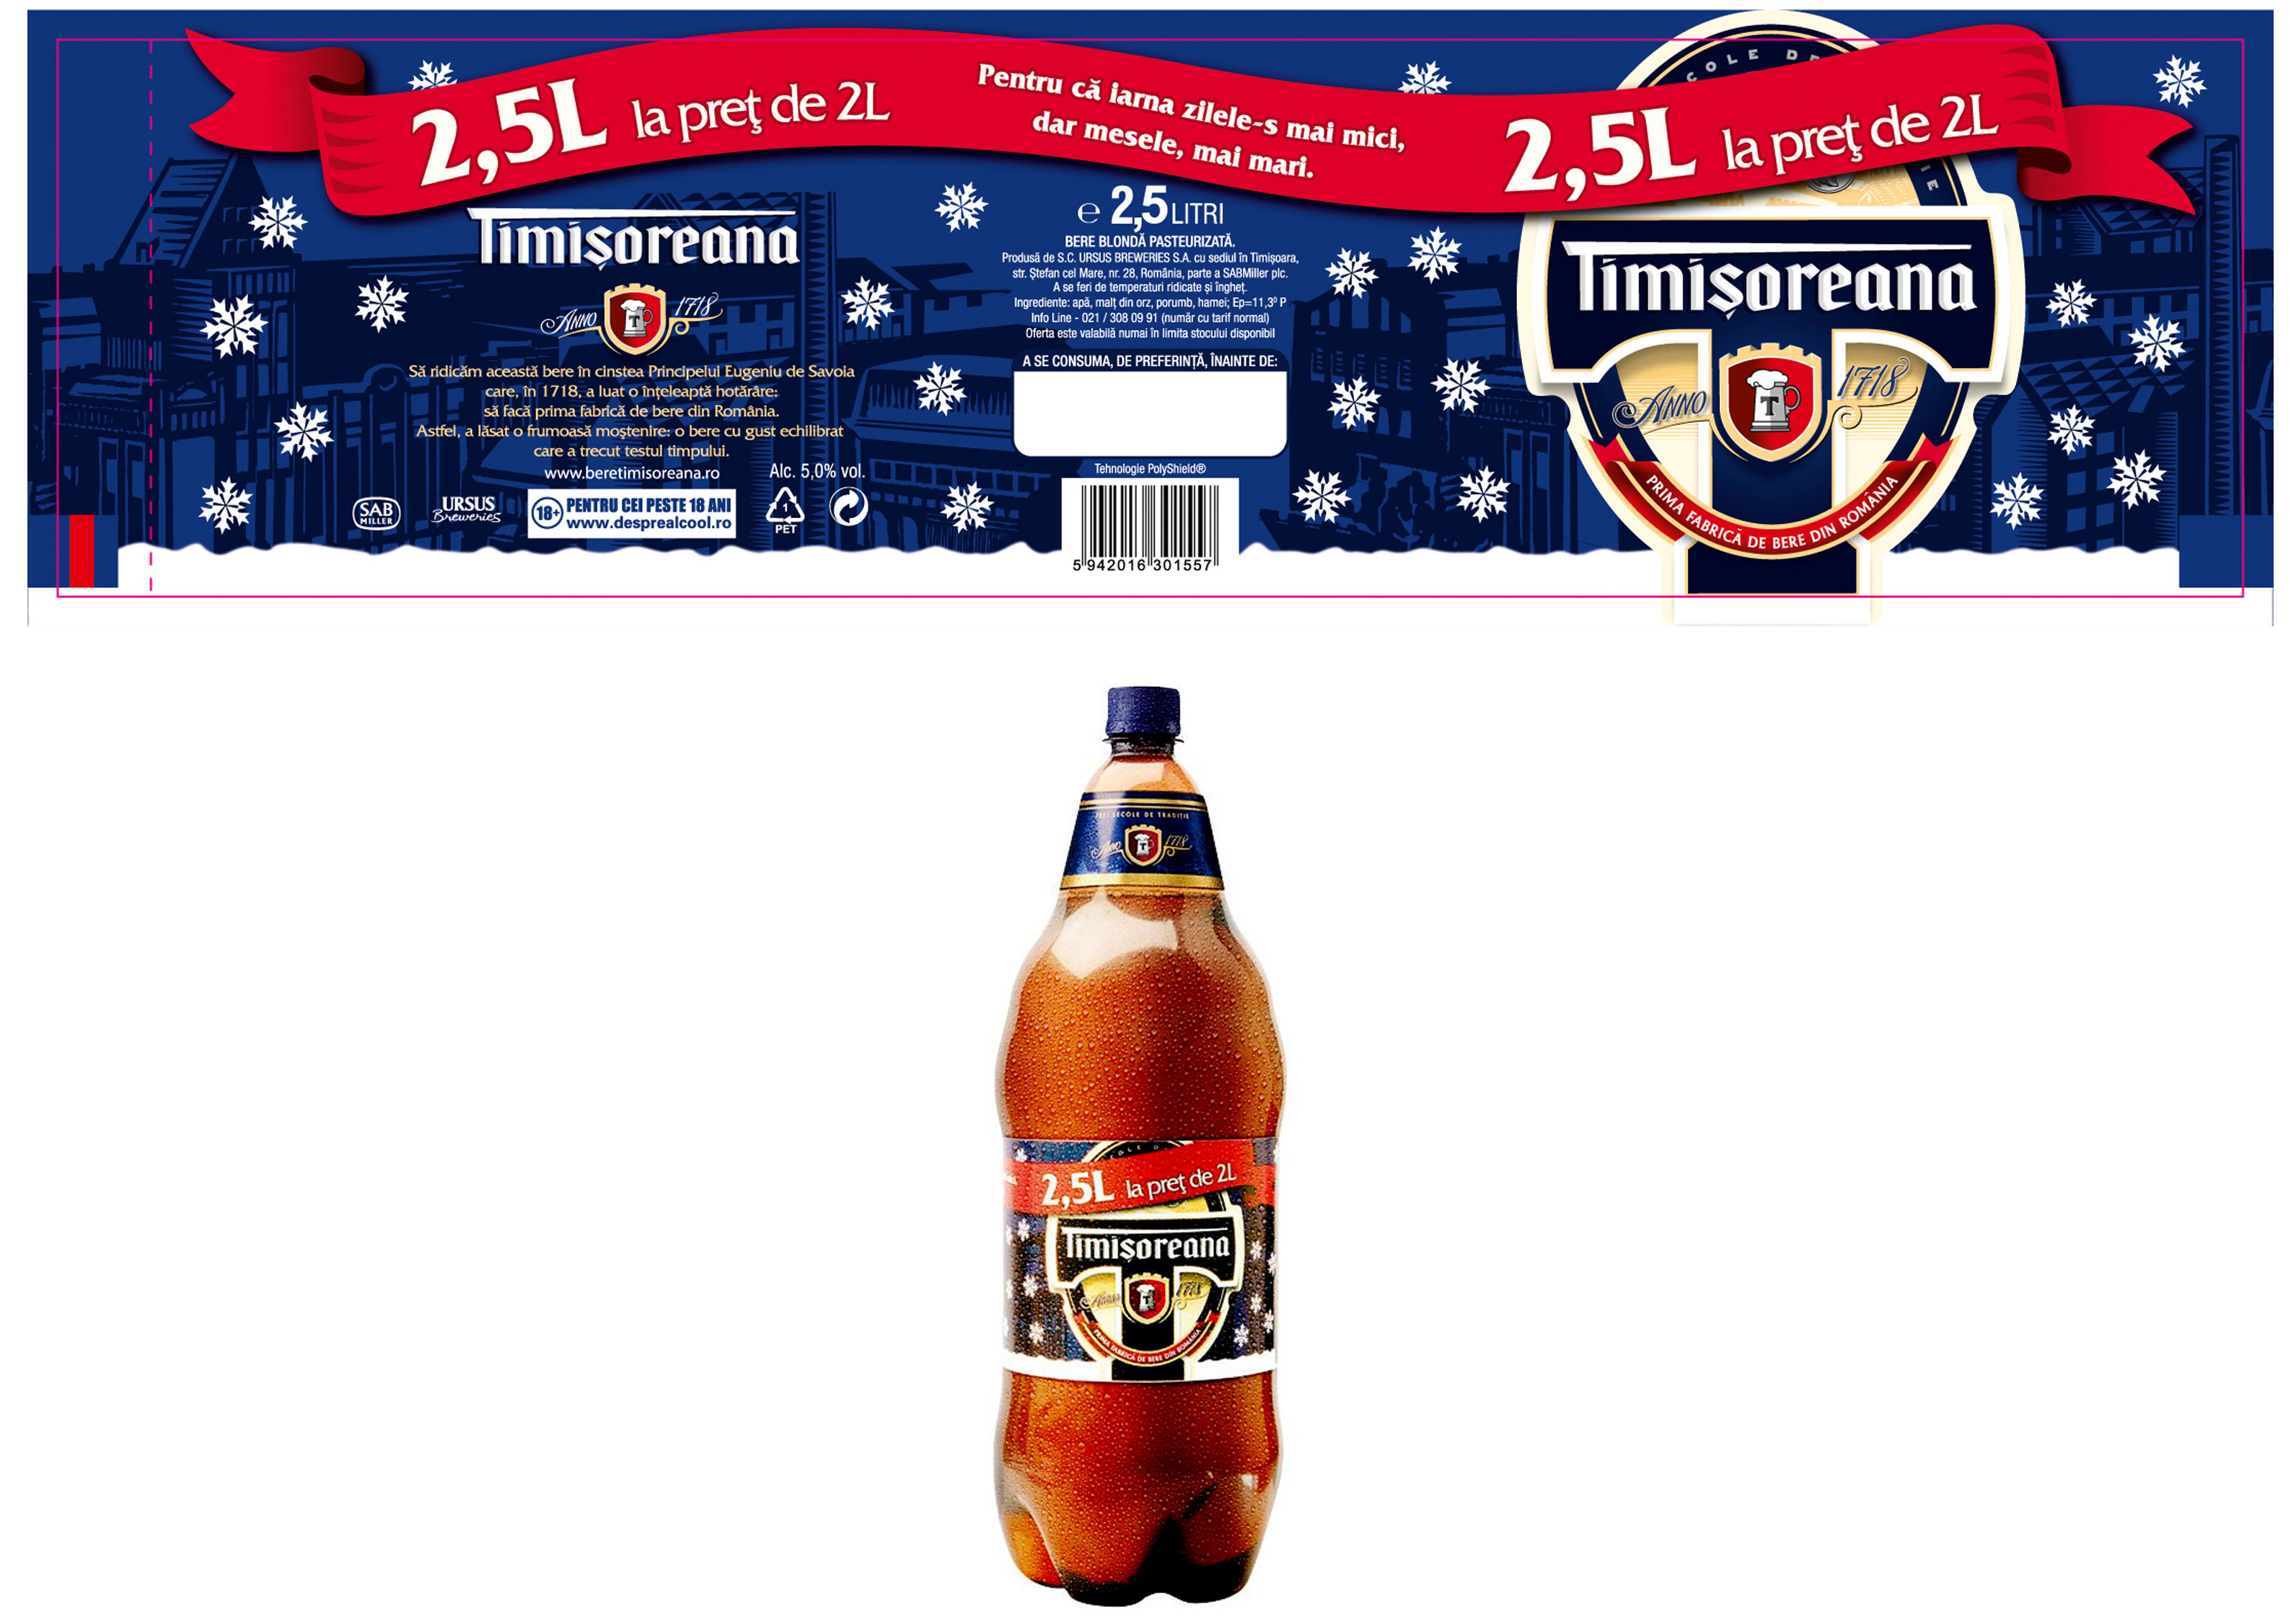 ROMANIA de Bere Timisoreana,Timisoara BANAT Bruna Speciale beer label C2074 003 